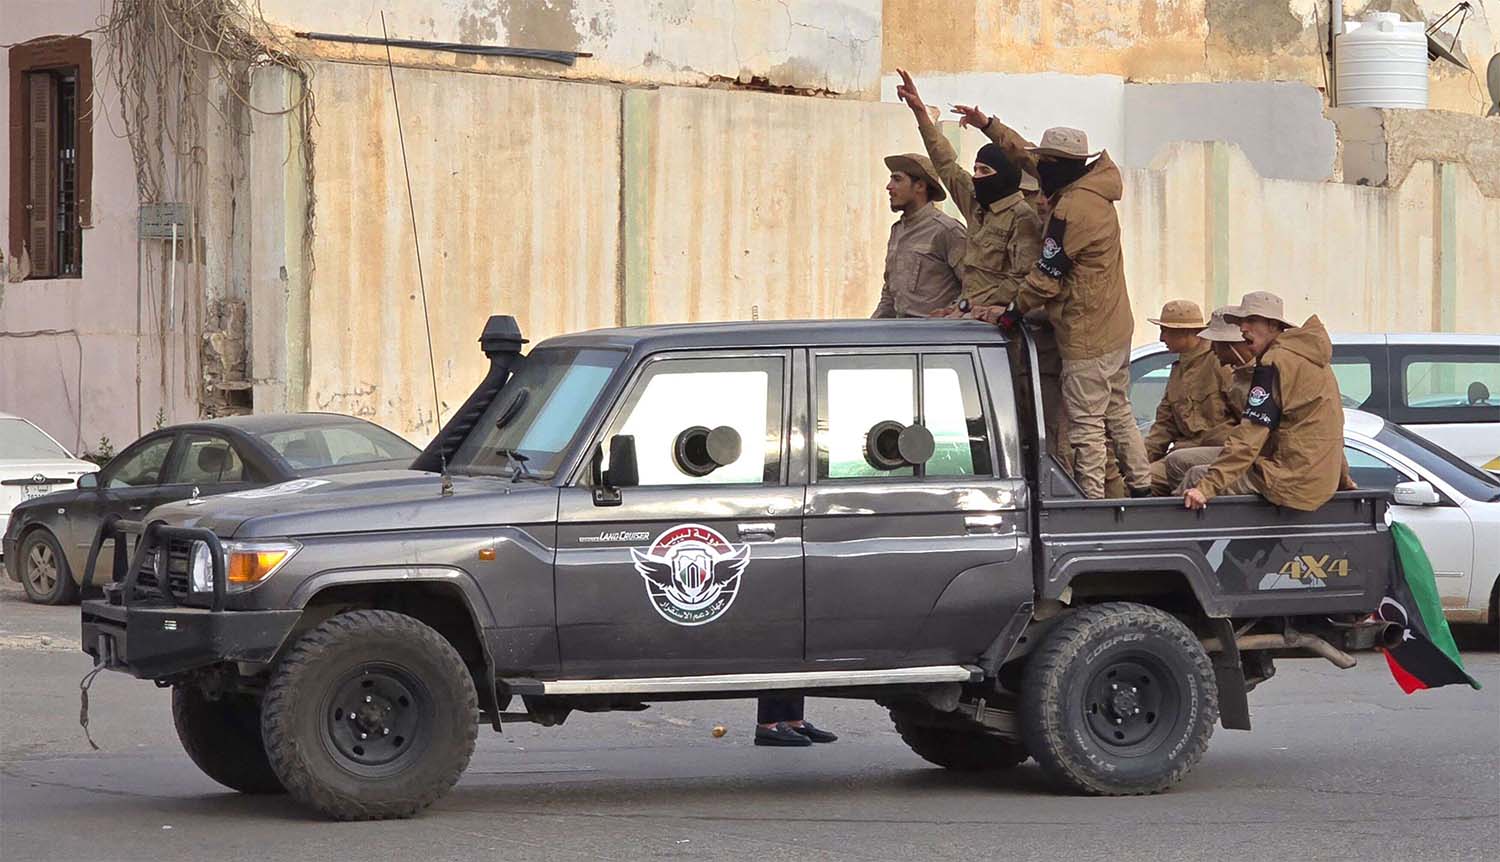 Libya split in 2014 between eastern and western factions